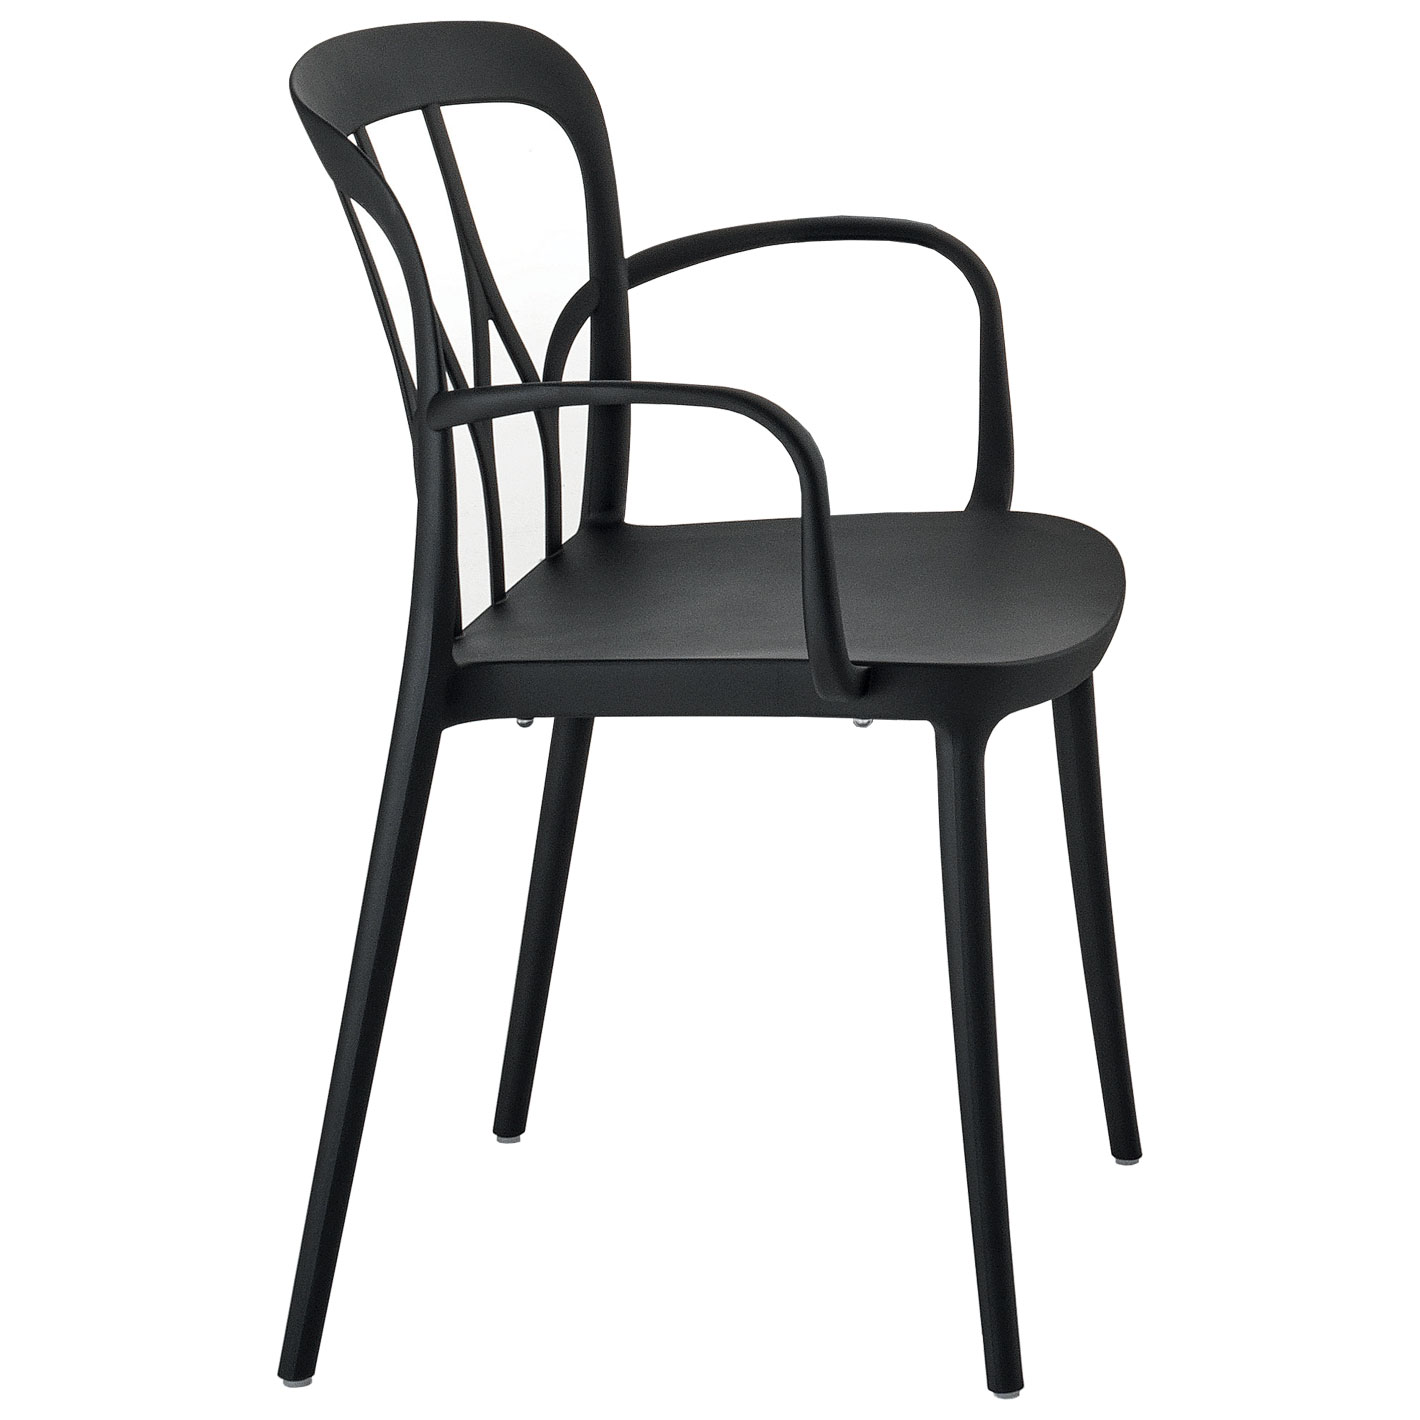 Tische & Stühle - GALAXY Armlehnstuhl